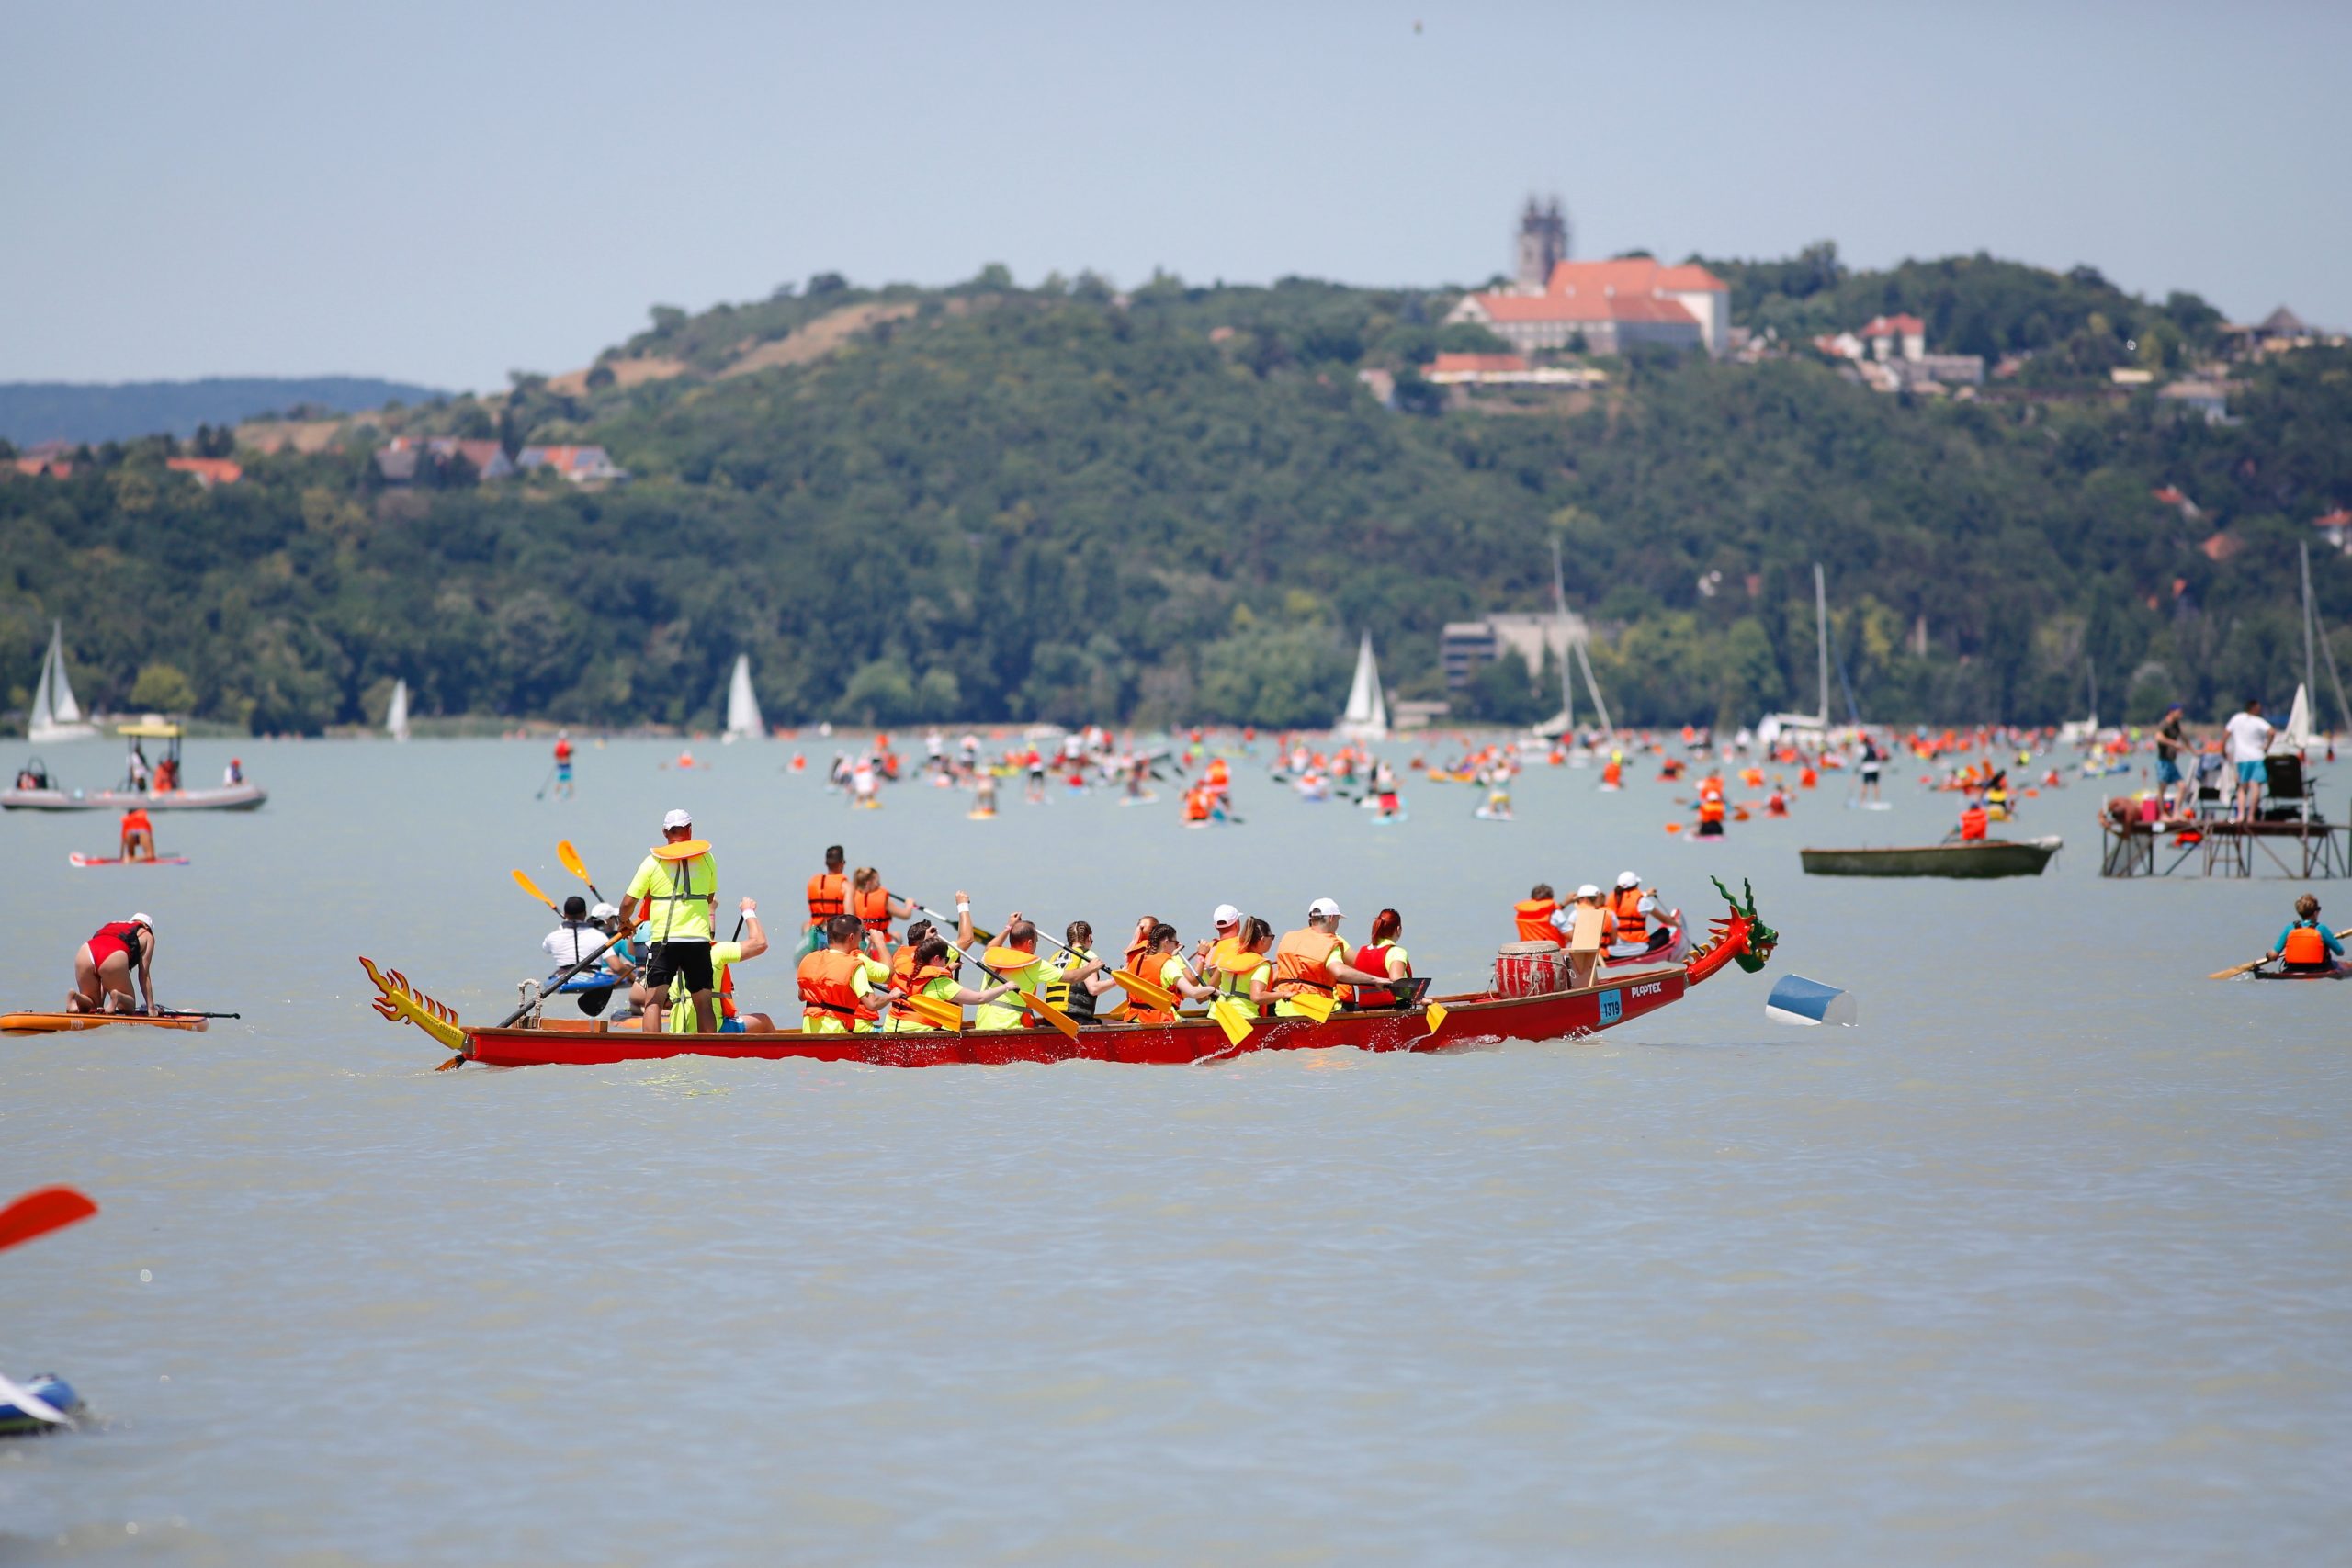 More Than 4,000 Kayak Across the Balaton